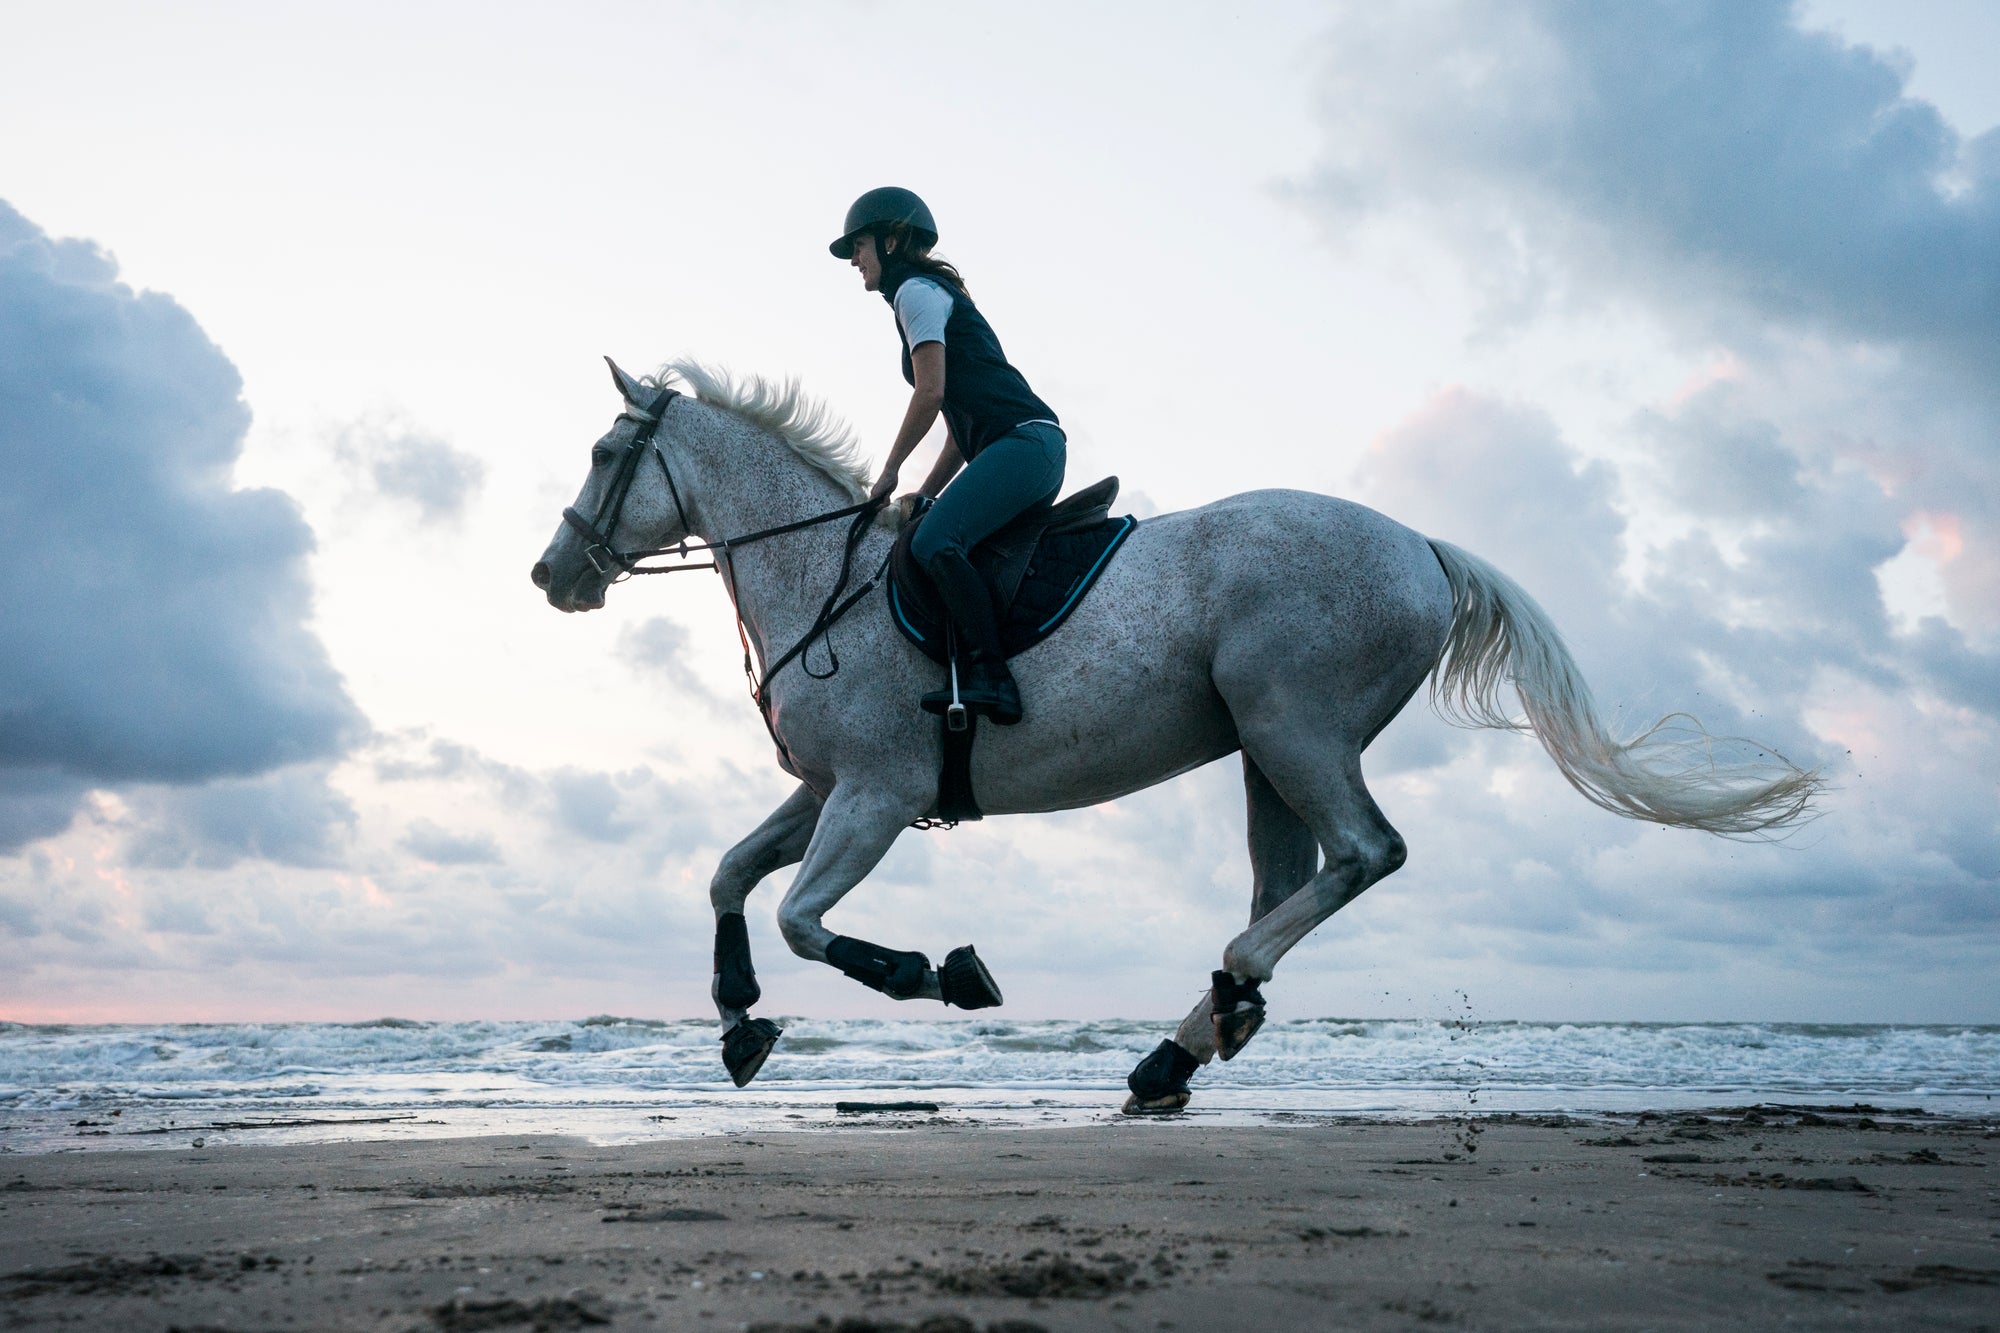 Meet Decathlon's Horse Riding Brand, Fouganza